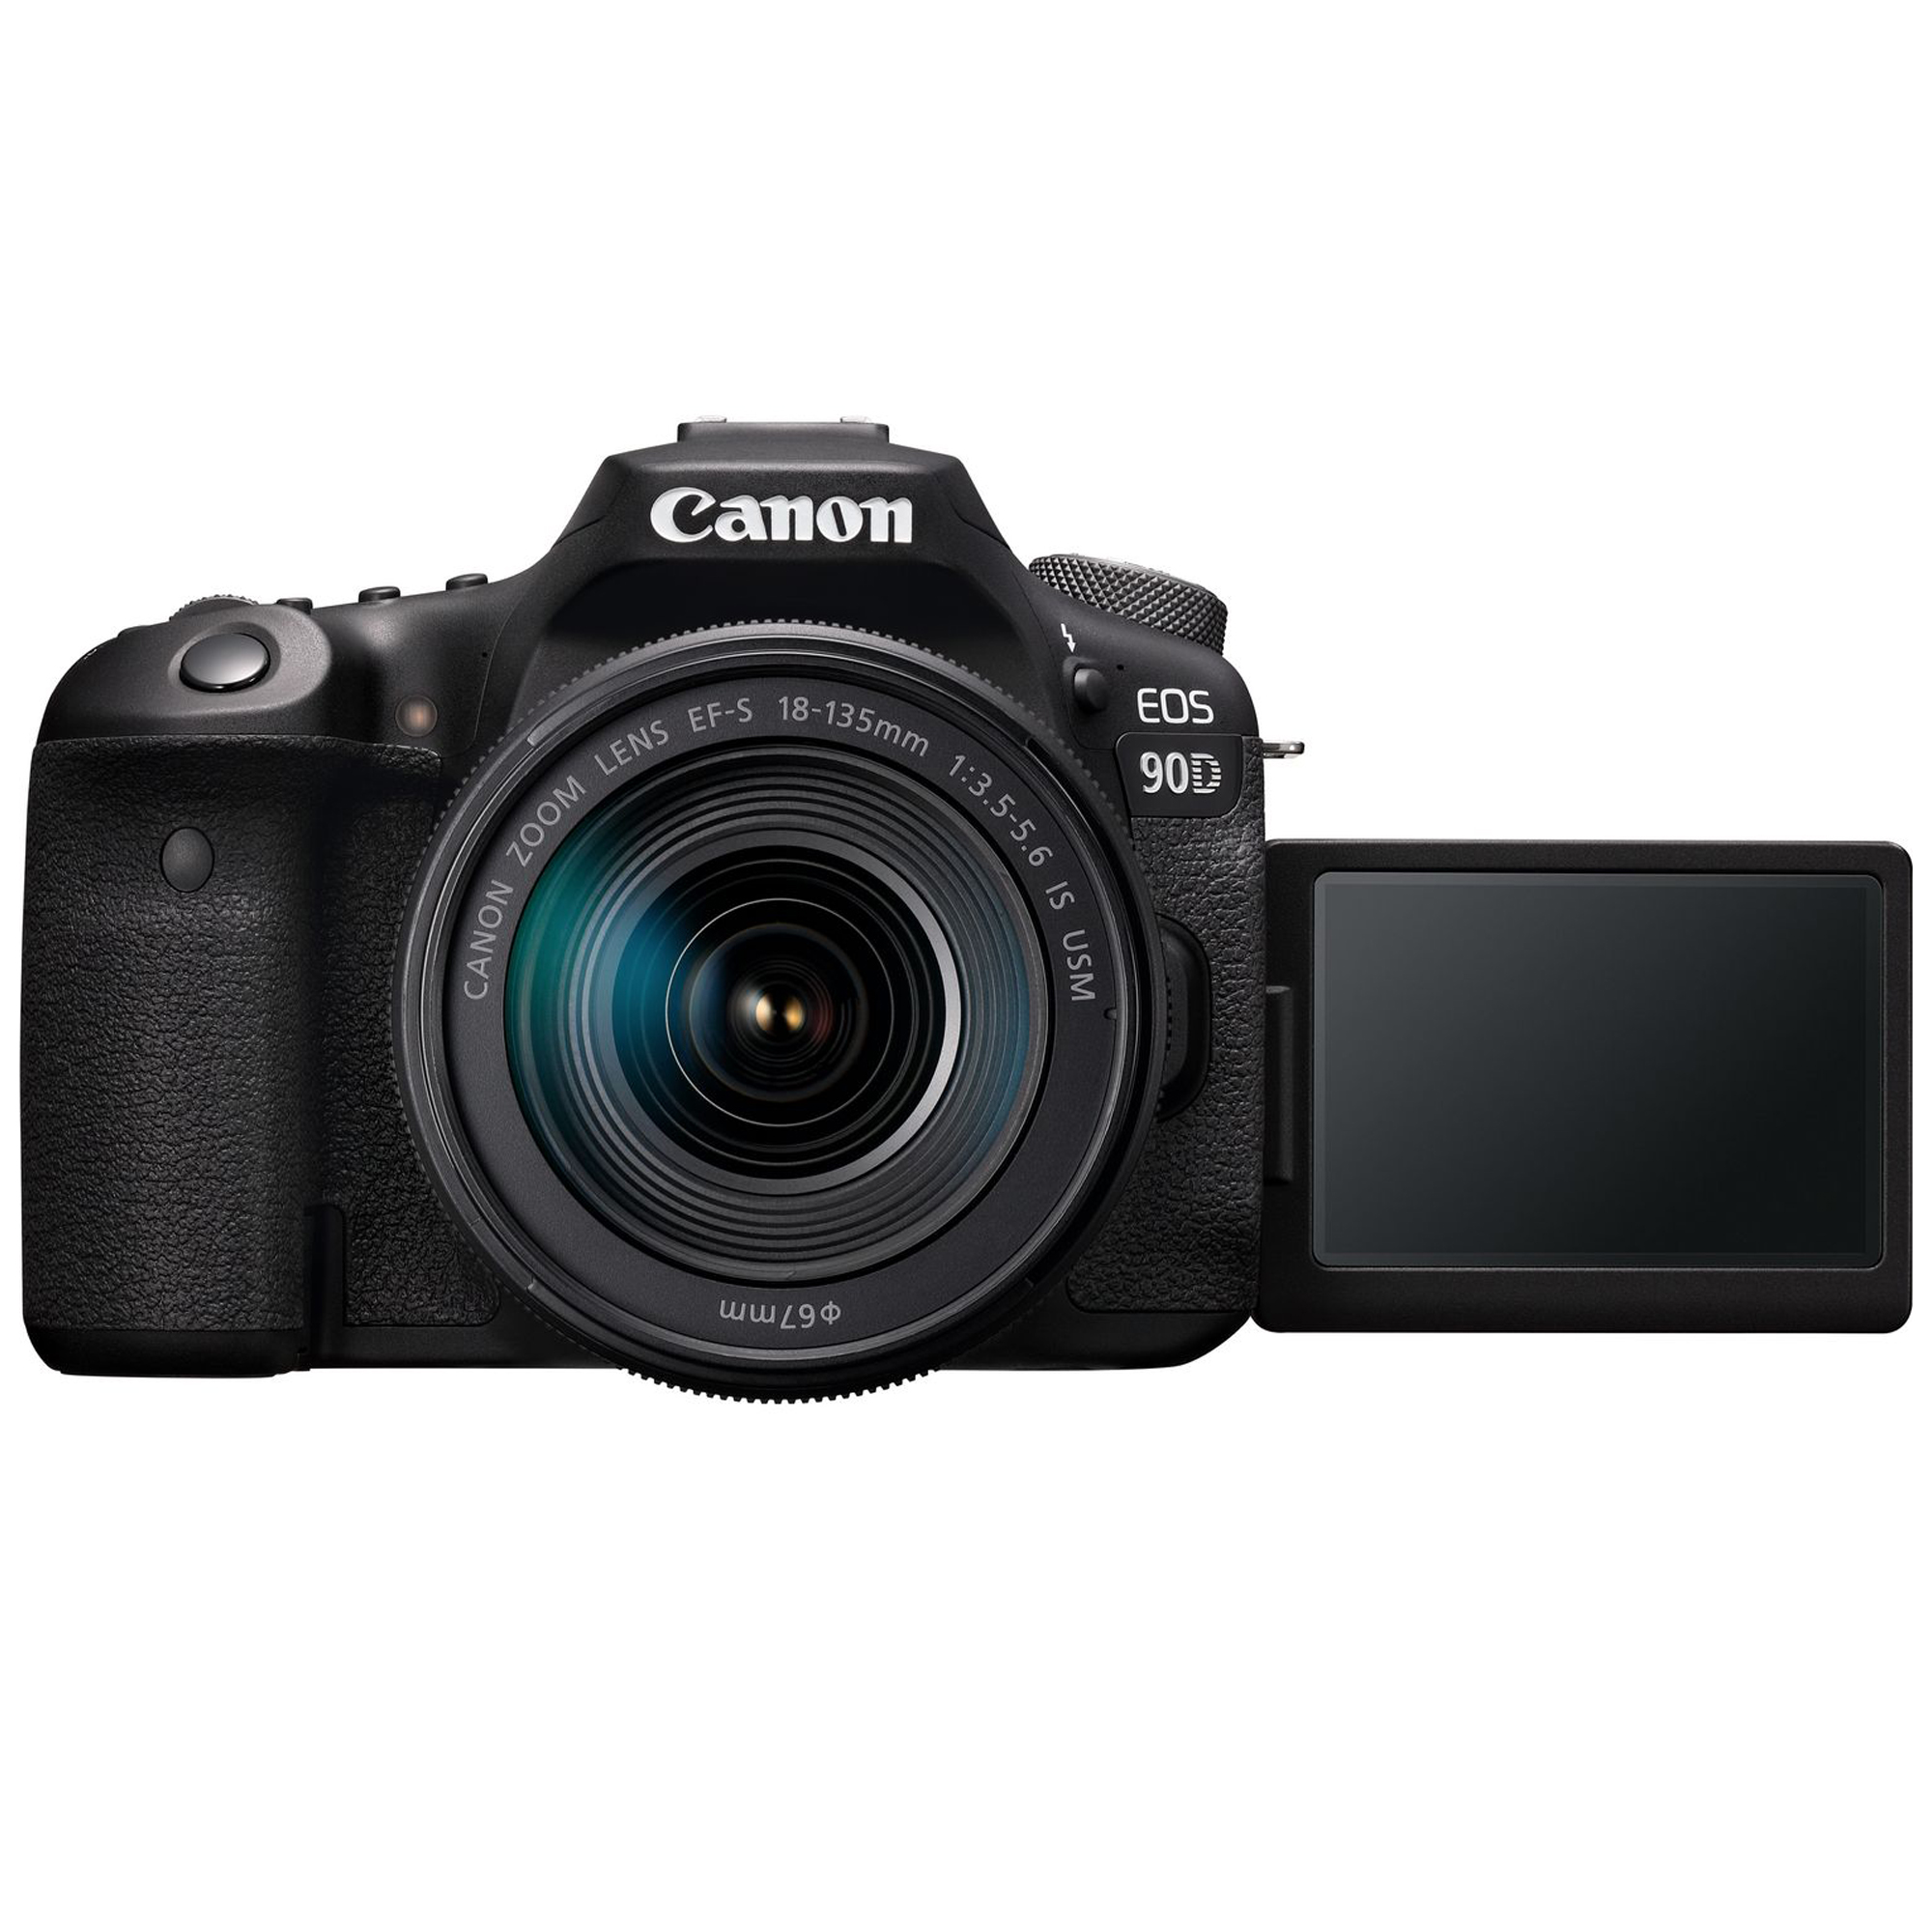 قیمت و خرید دوربین عکاسی کانن مدل EOS 90D به همراه لنز 135-18 میلی متر ISUSM - فروشگاه دیجیتال سایو